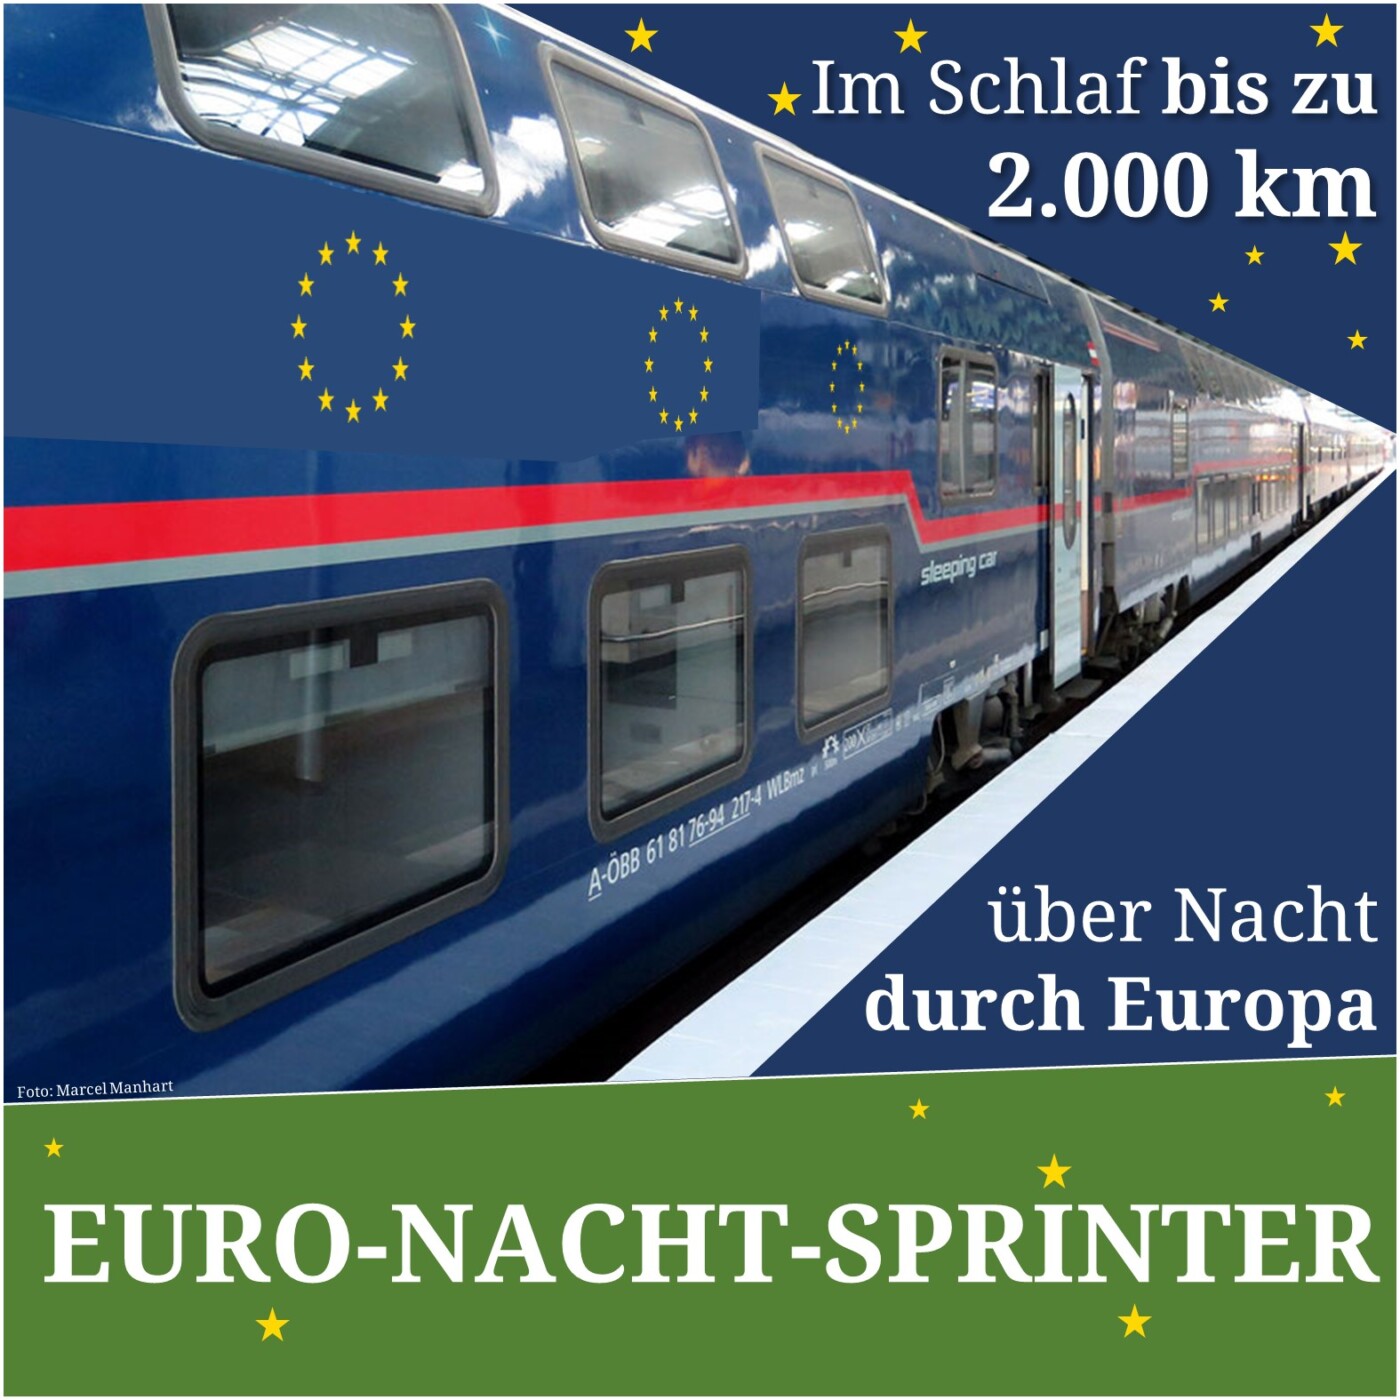 Im Euro-Nacht-Sprinter durch Europa